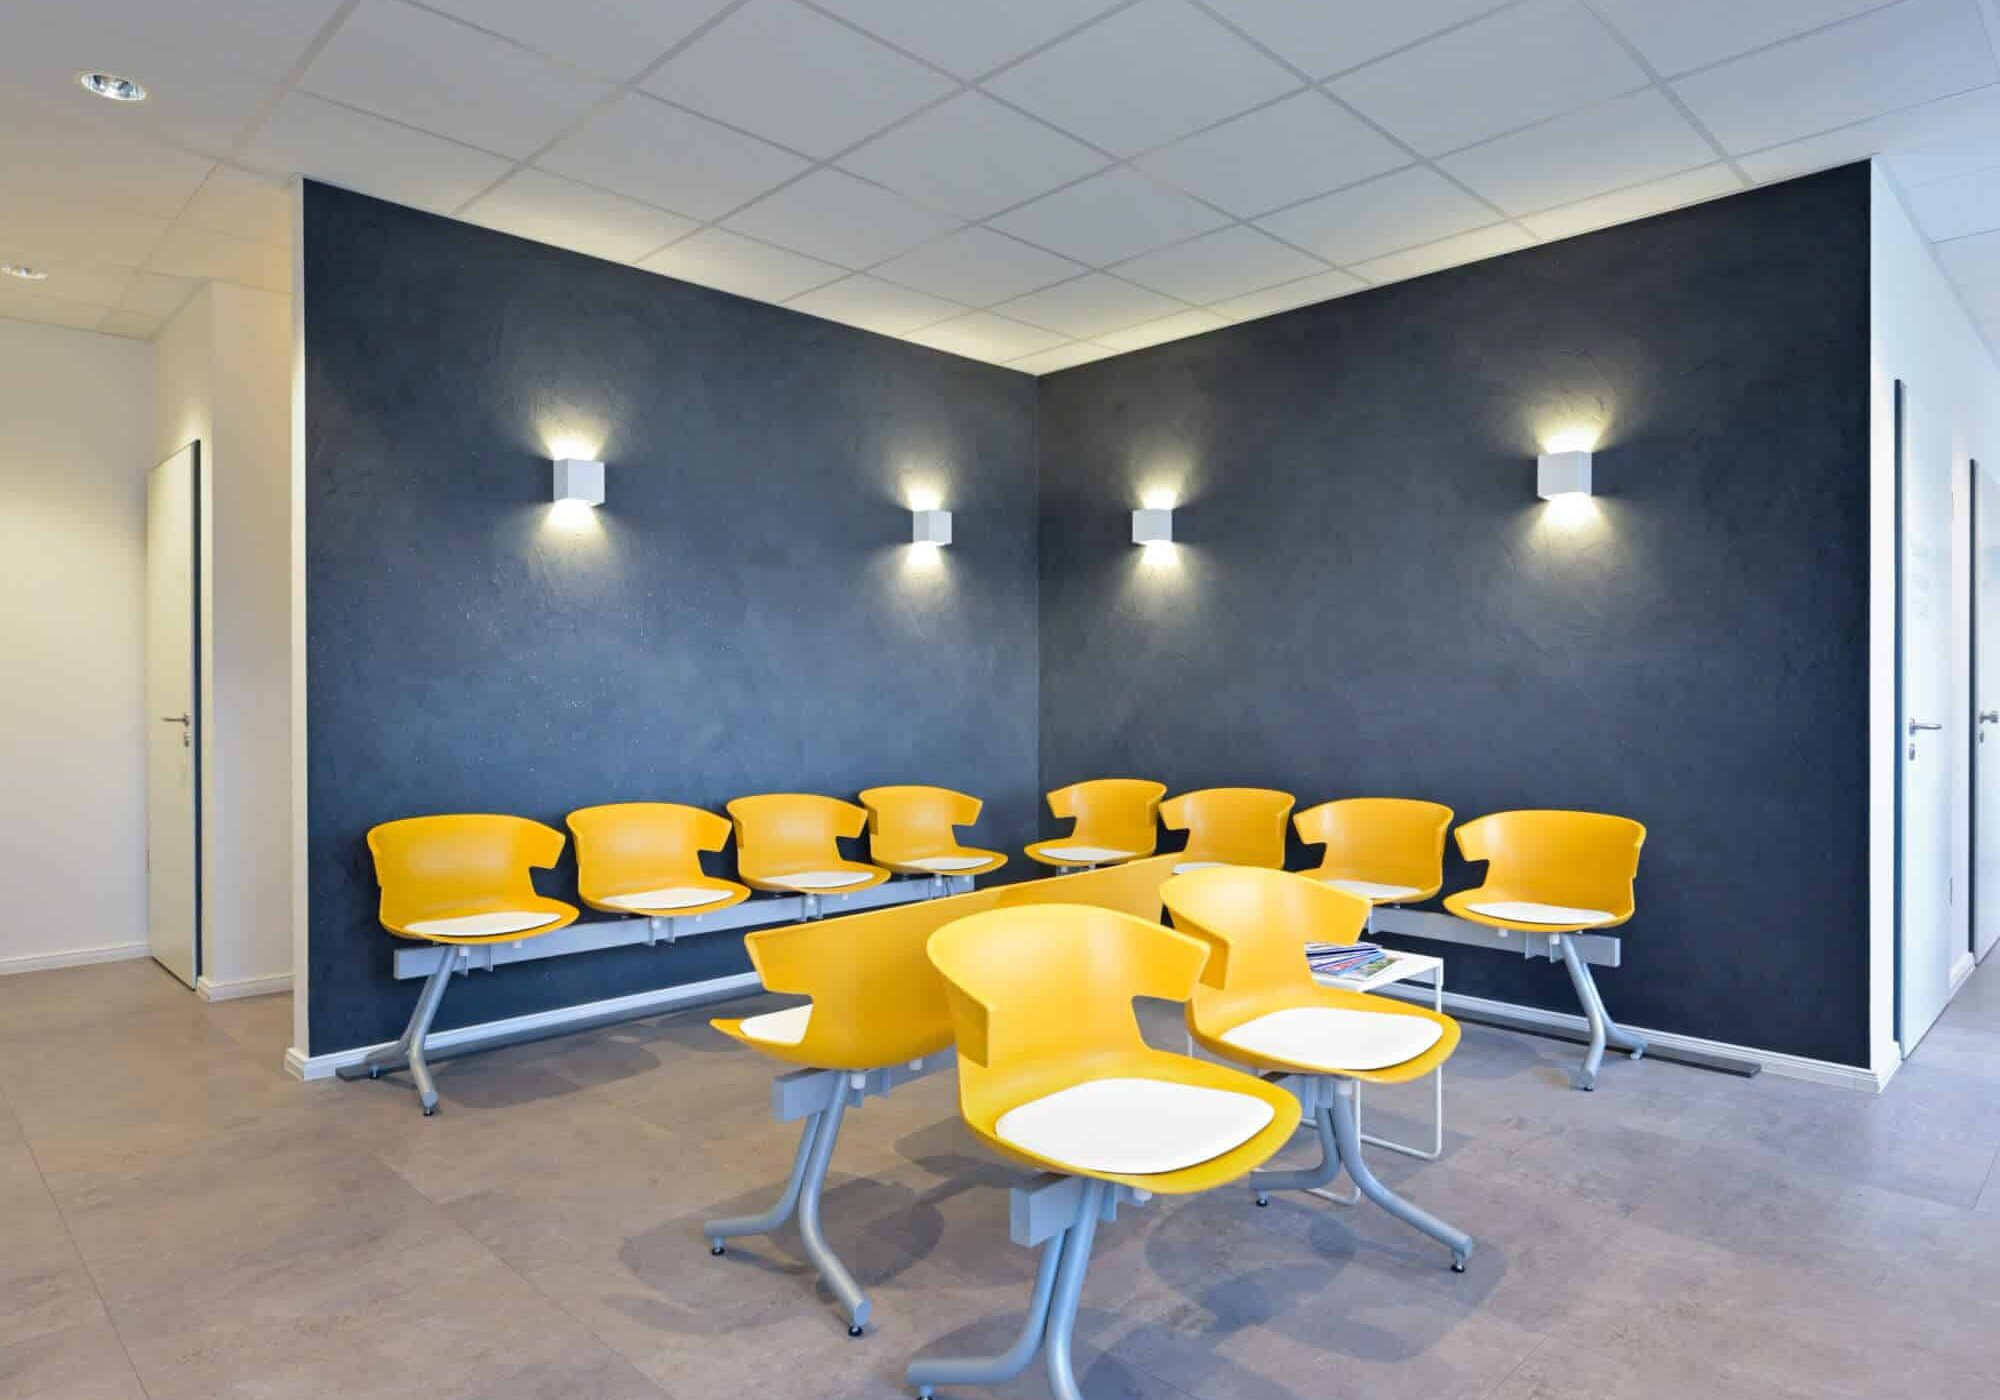 Wartezimmer mit gelben Stühlen an einem grauen Tisch, dunkelgrauer Akzentwand mit aufgesetzten Lampen und zwei Türen im Hintergrund.